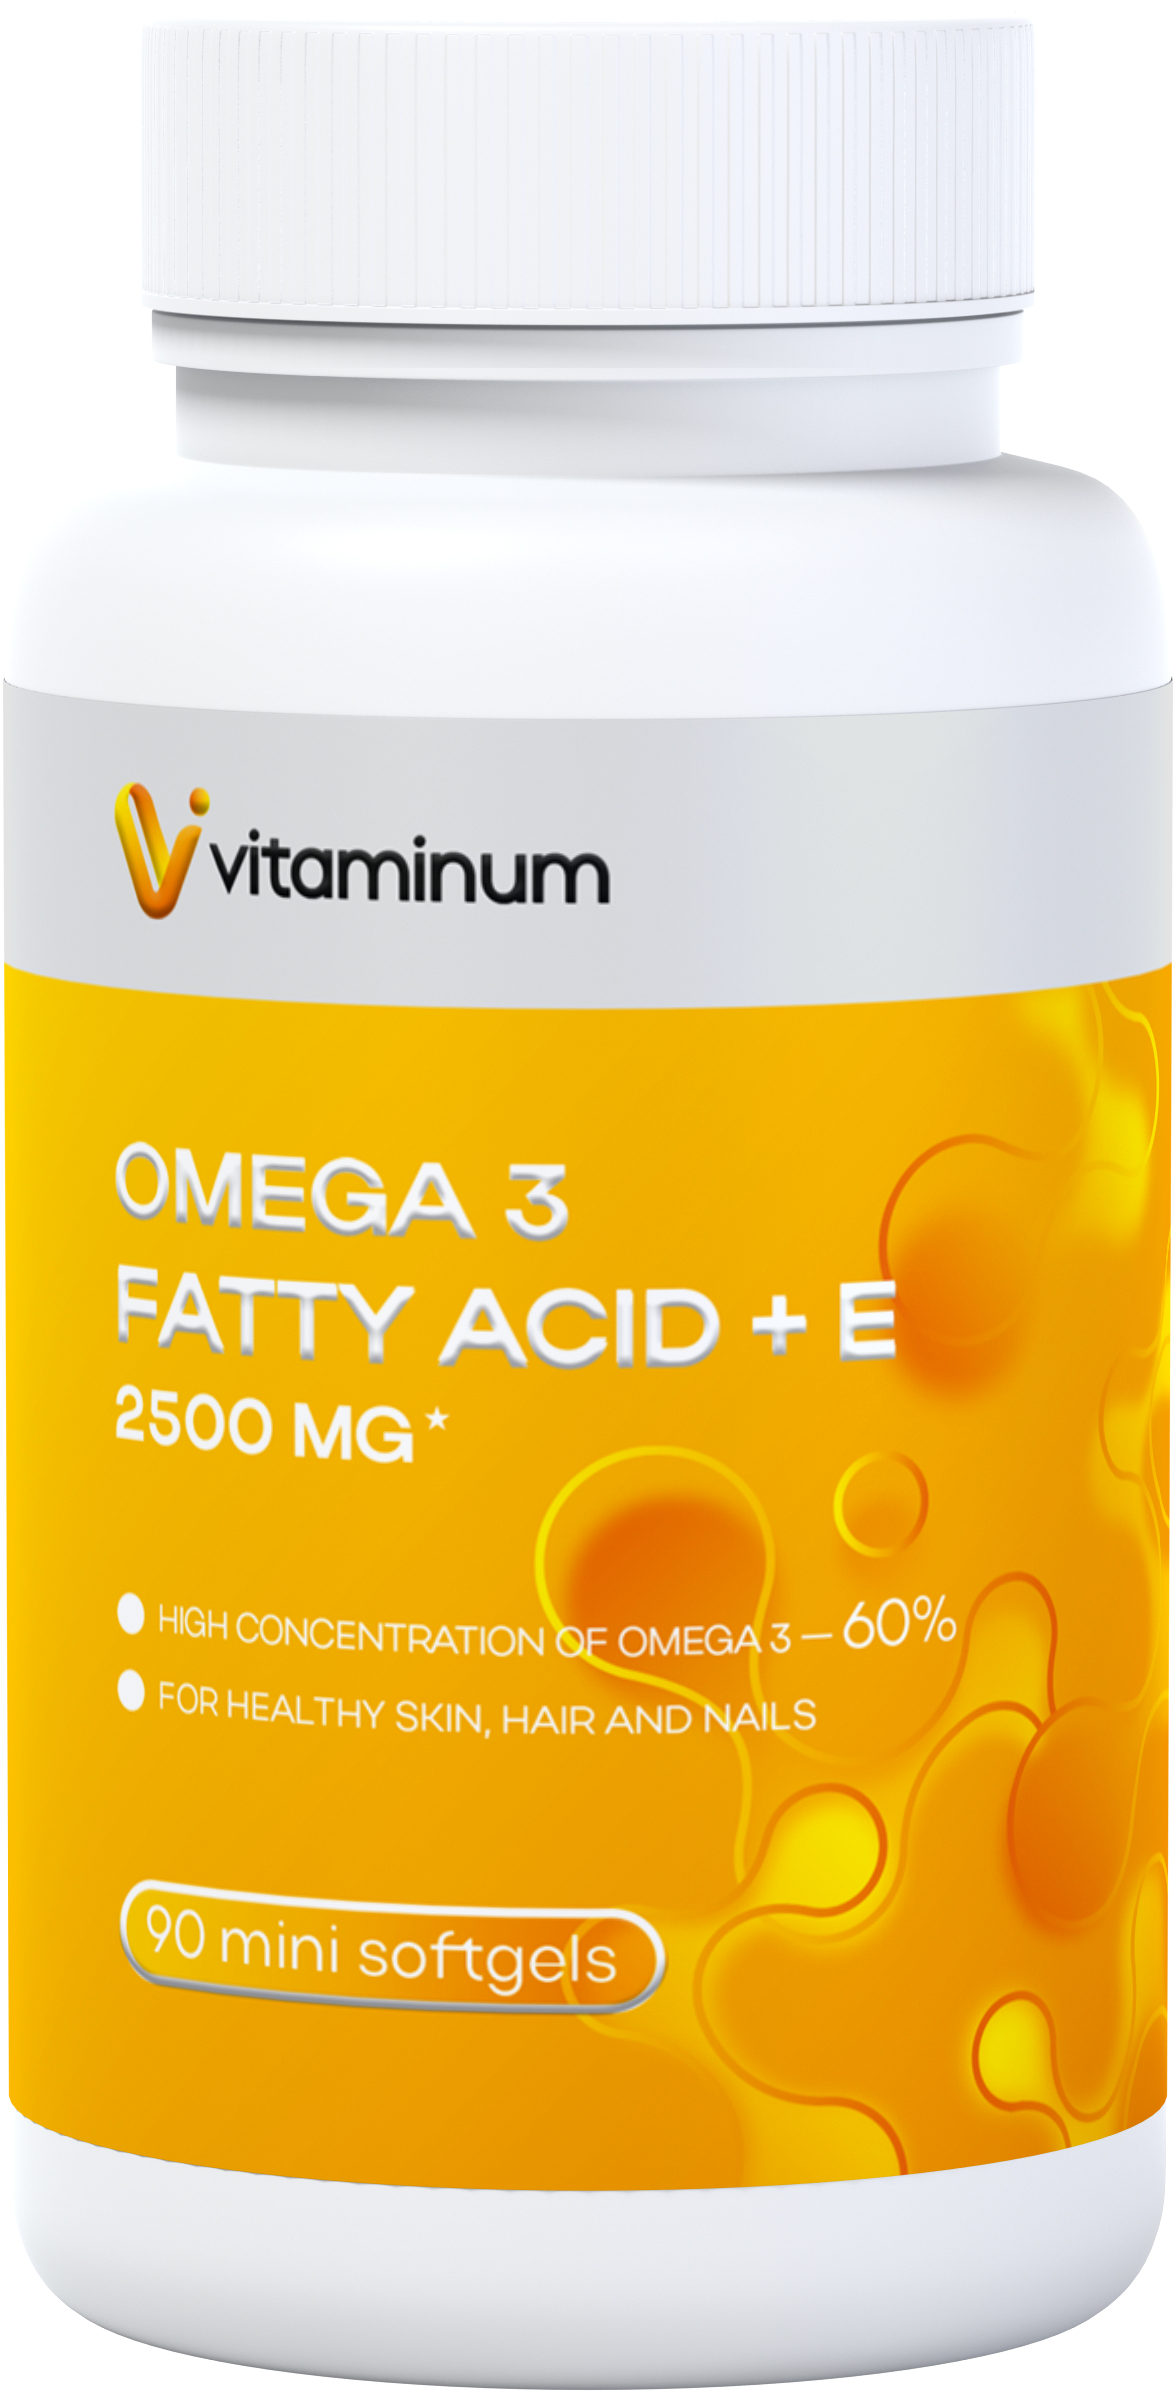  Vitaminum ОМЕГА 3 60% + витамин Е (2500 MG*) 90 капсул 700 мг   в Новочебоксарске